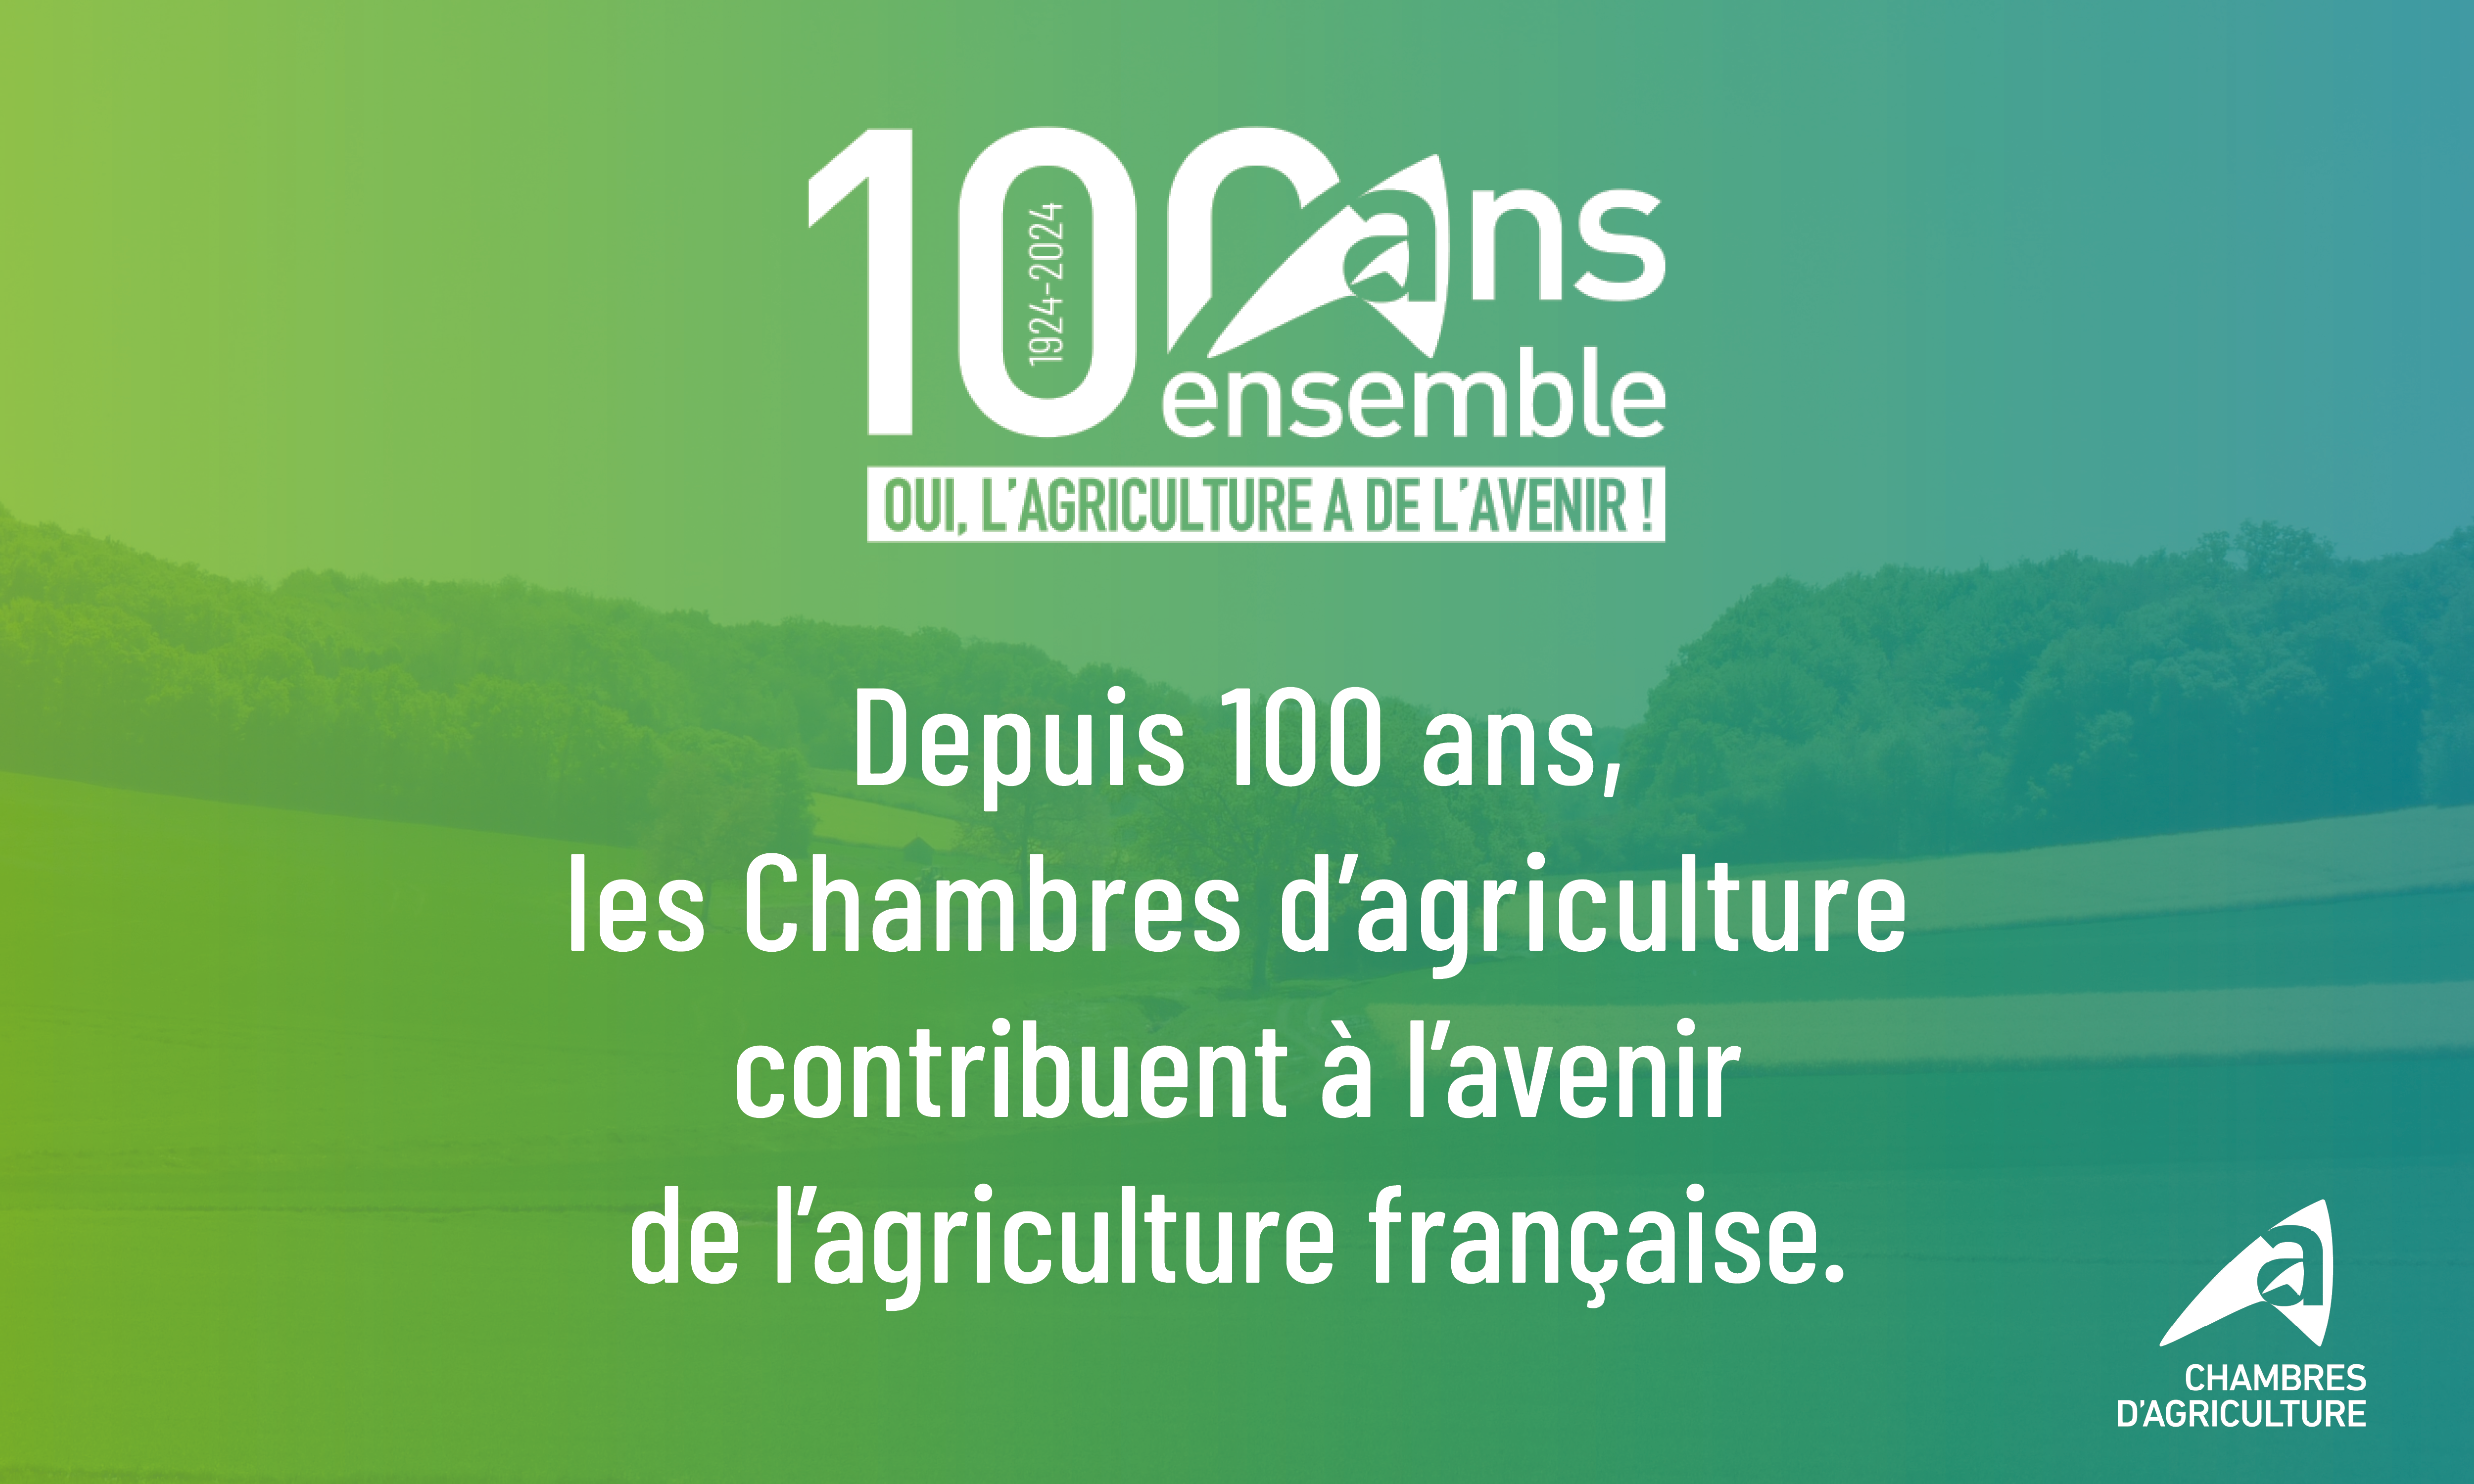  Les Chambres d'agriculture fêtent leurs 100ans - Chambres d'agriculture Provence-Alpes-Côte d'Azur